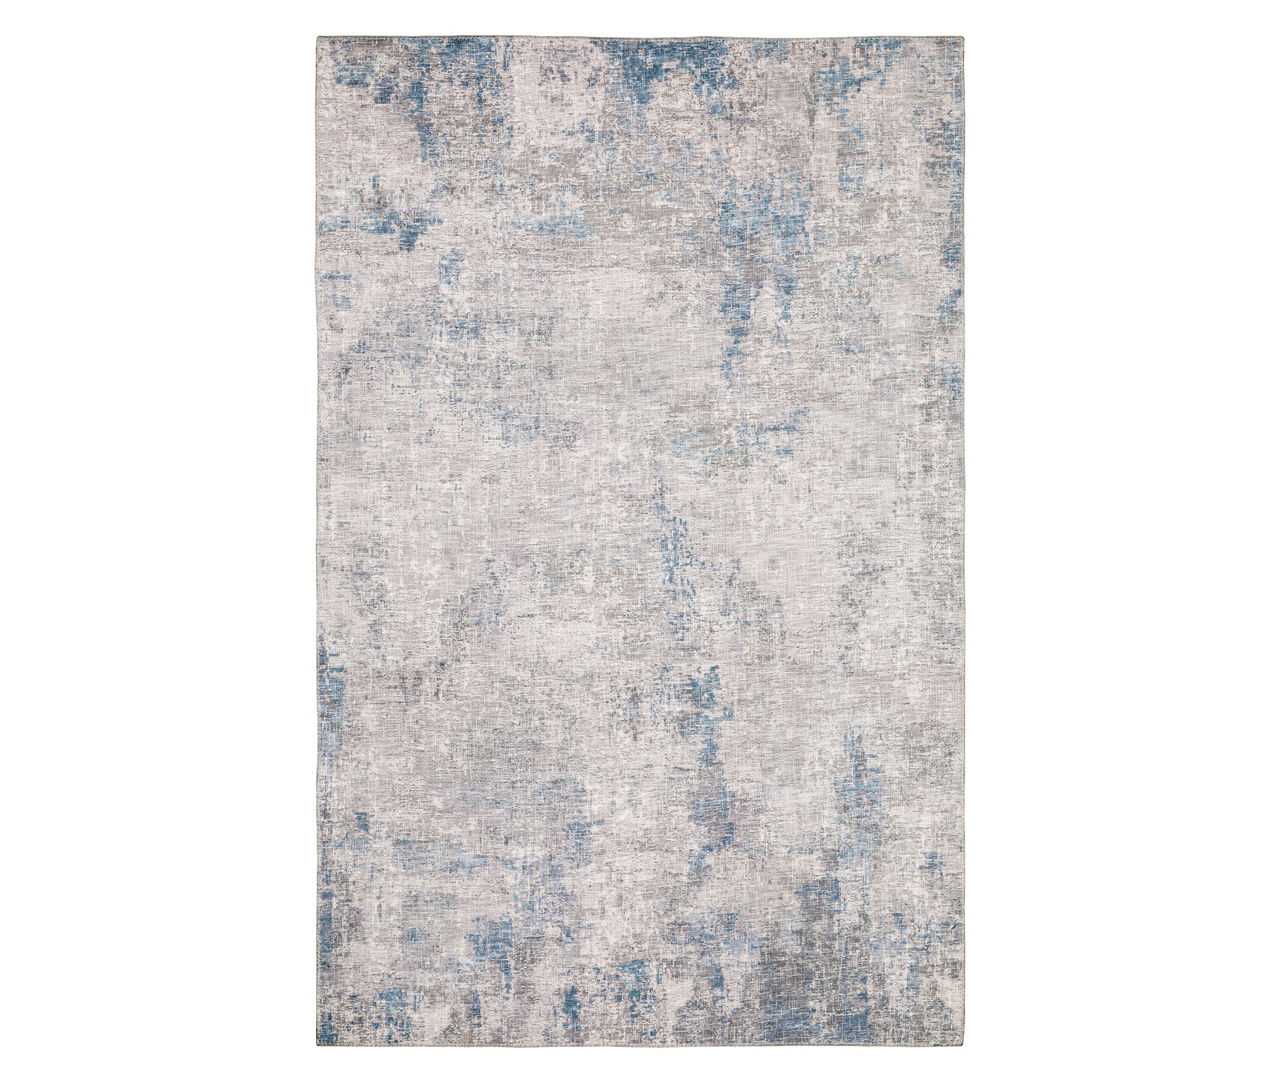 Mylan Gray & Blue Faux Hide Tile Pattern Area Rug, (7.8' x 10')